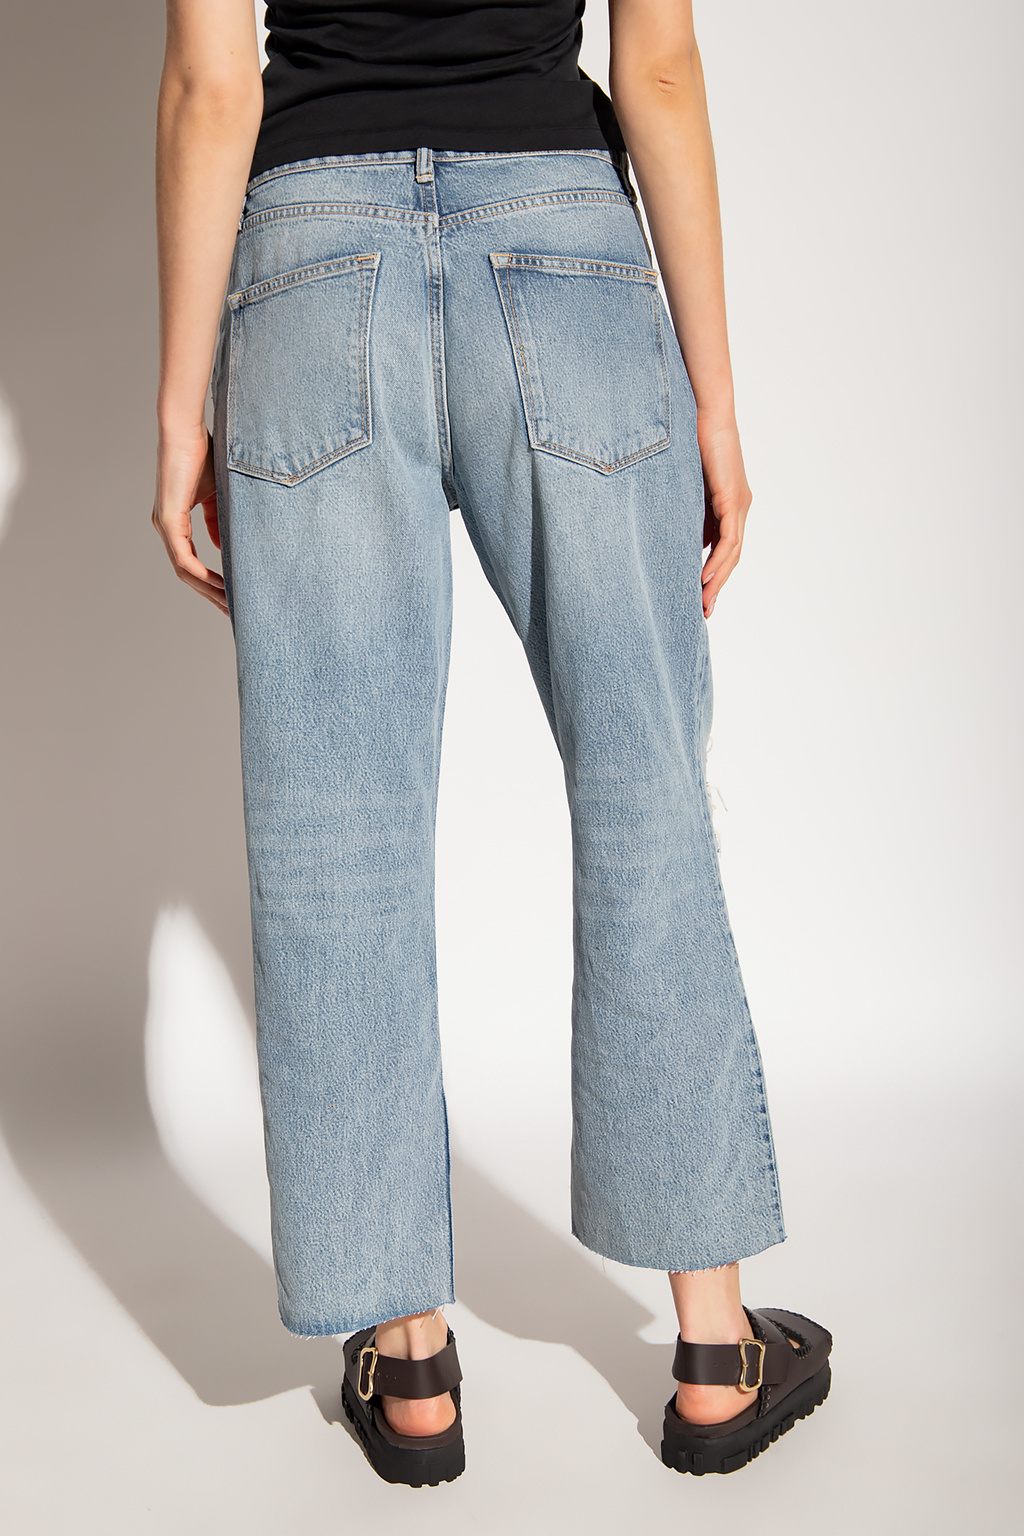 AllSaints ‘April’ jeans